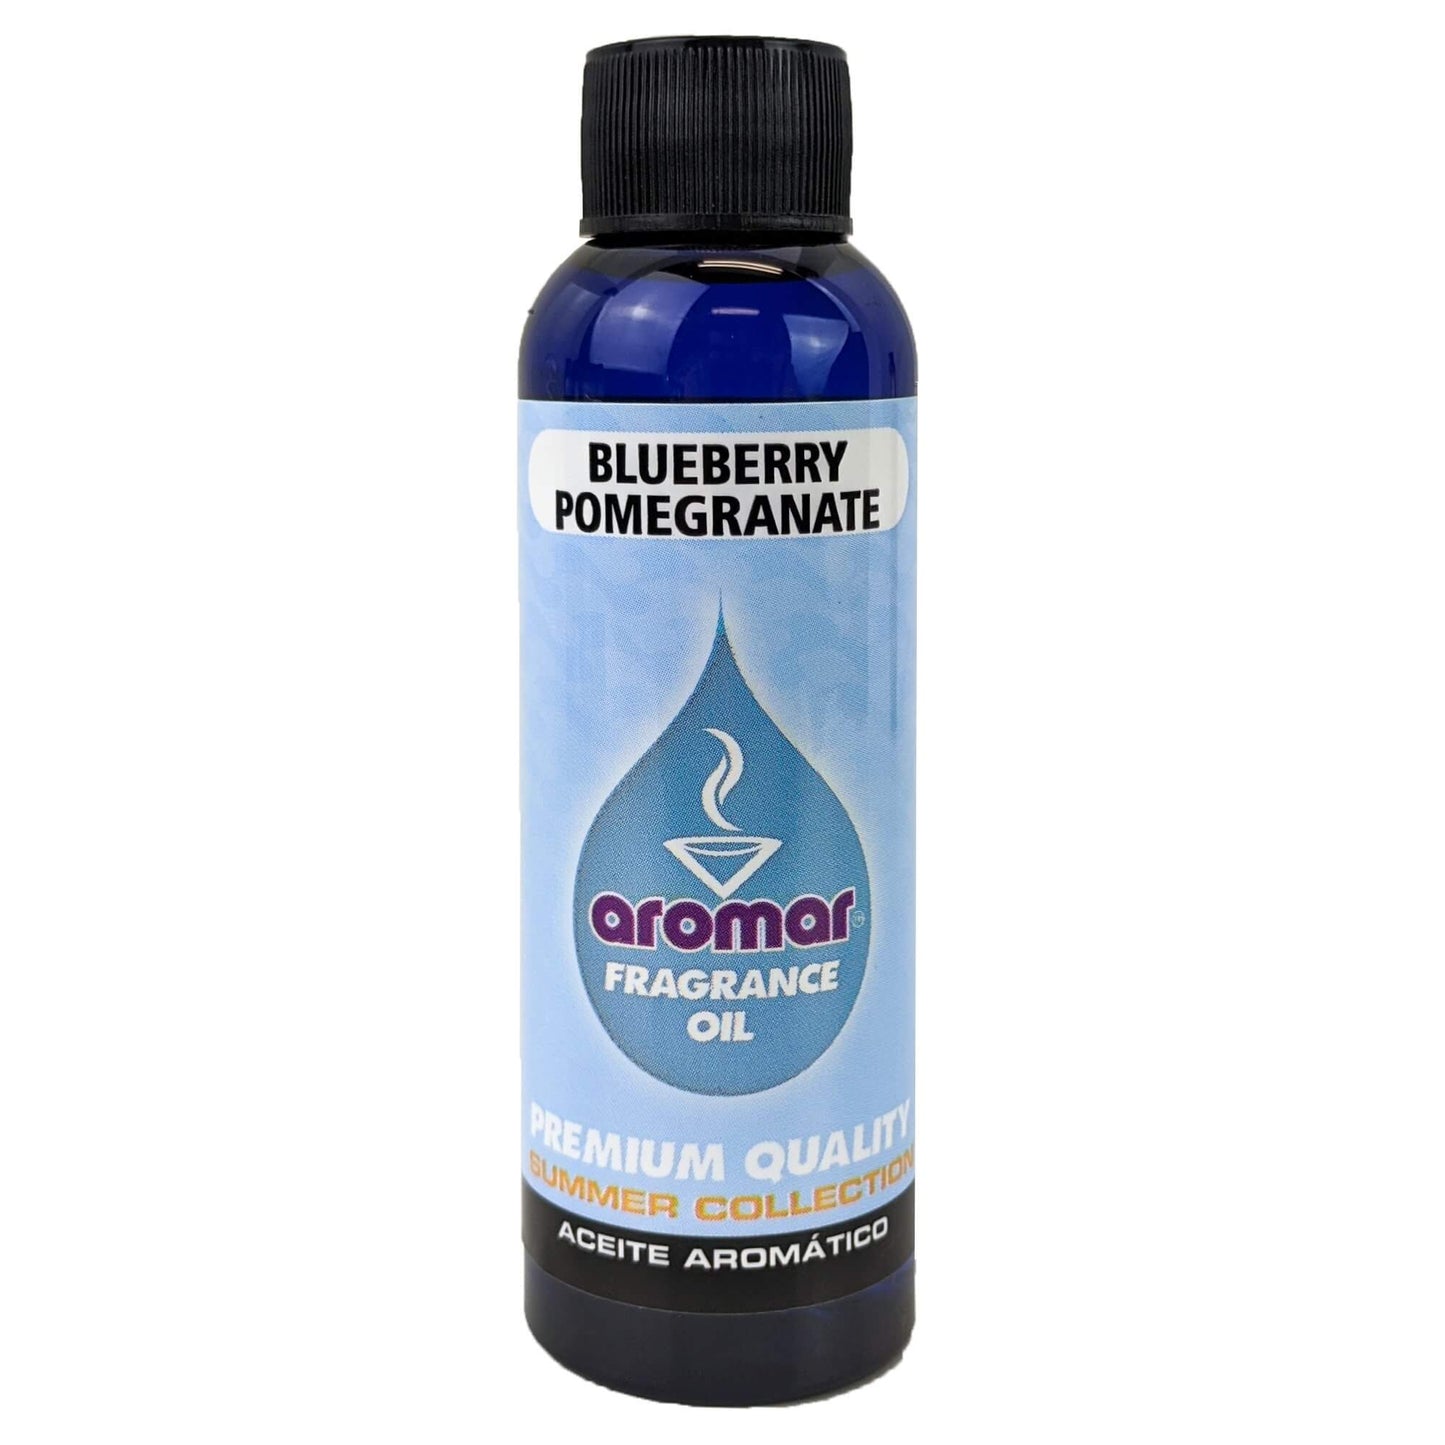 Blueberry Pomegranate Scent Aromar Fragrance Oil, 2oz/60ml